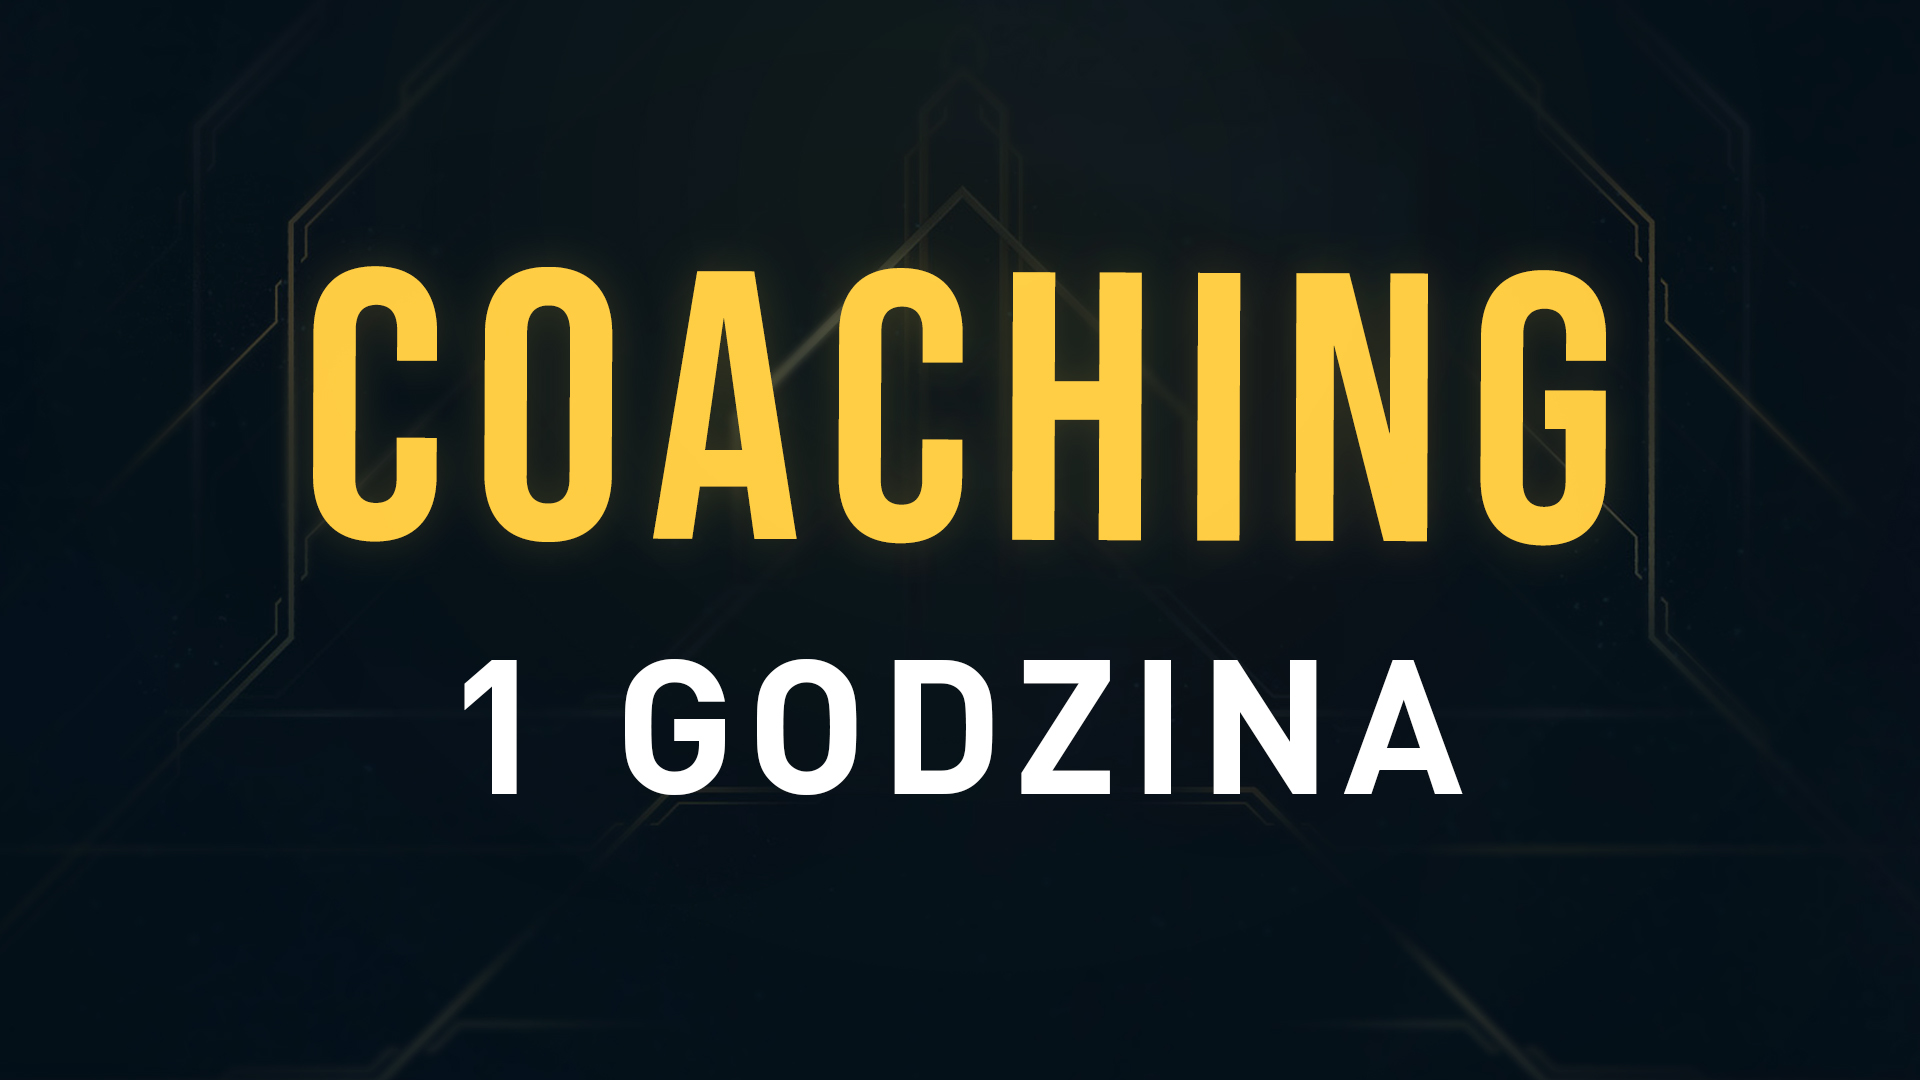 LOL: Coaching - 1 godzina